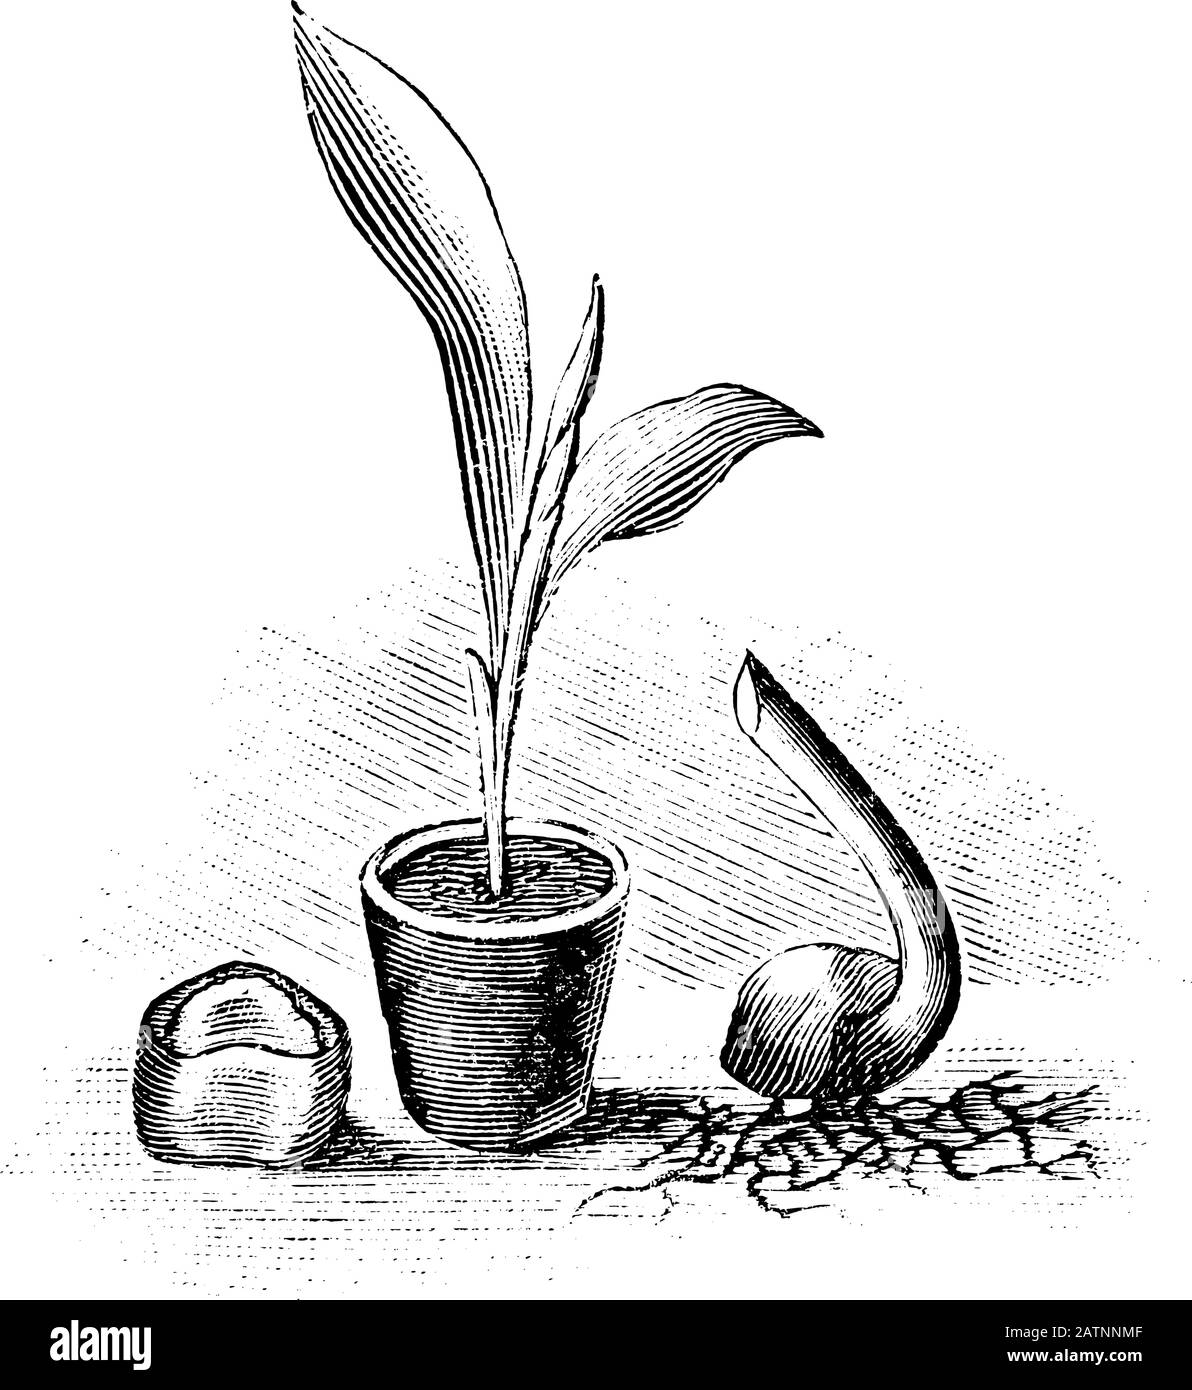 Antica linea d'arte vintage illustrazione, incisione o disegno di semi, semenzale e germogliante seme di pianta di banana albero . Da prenotare Piante in camera, Praga, 1898. Illustrazione Vettoriale